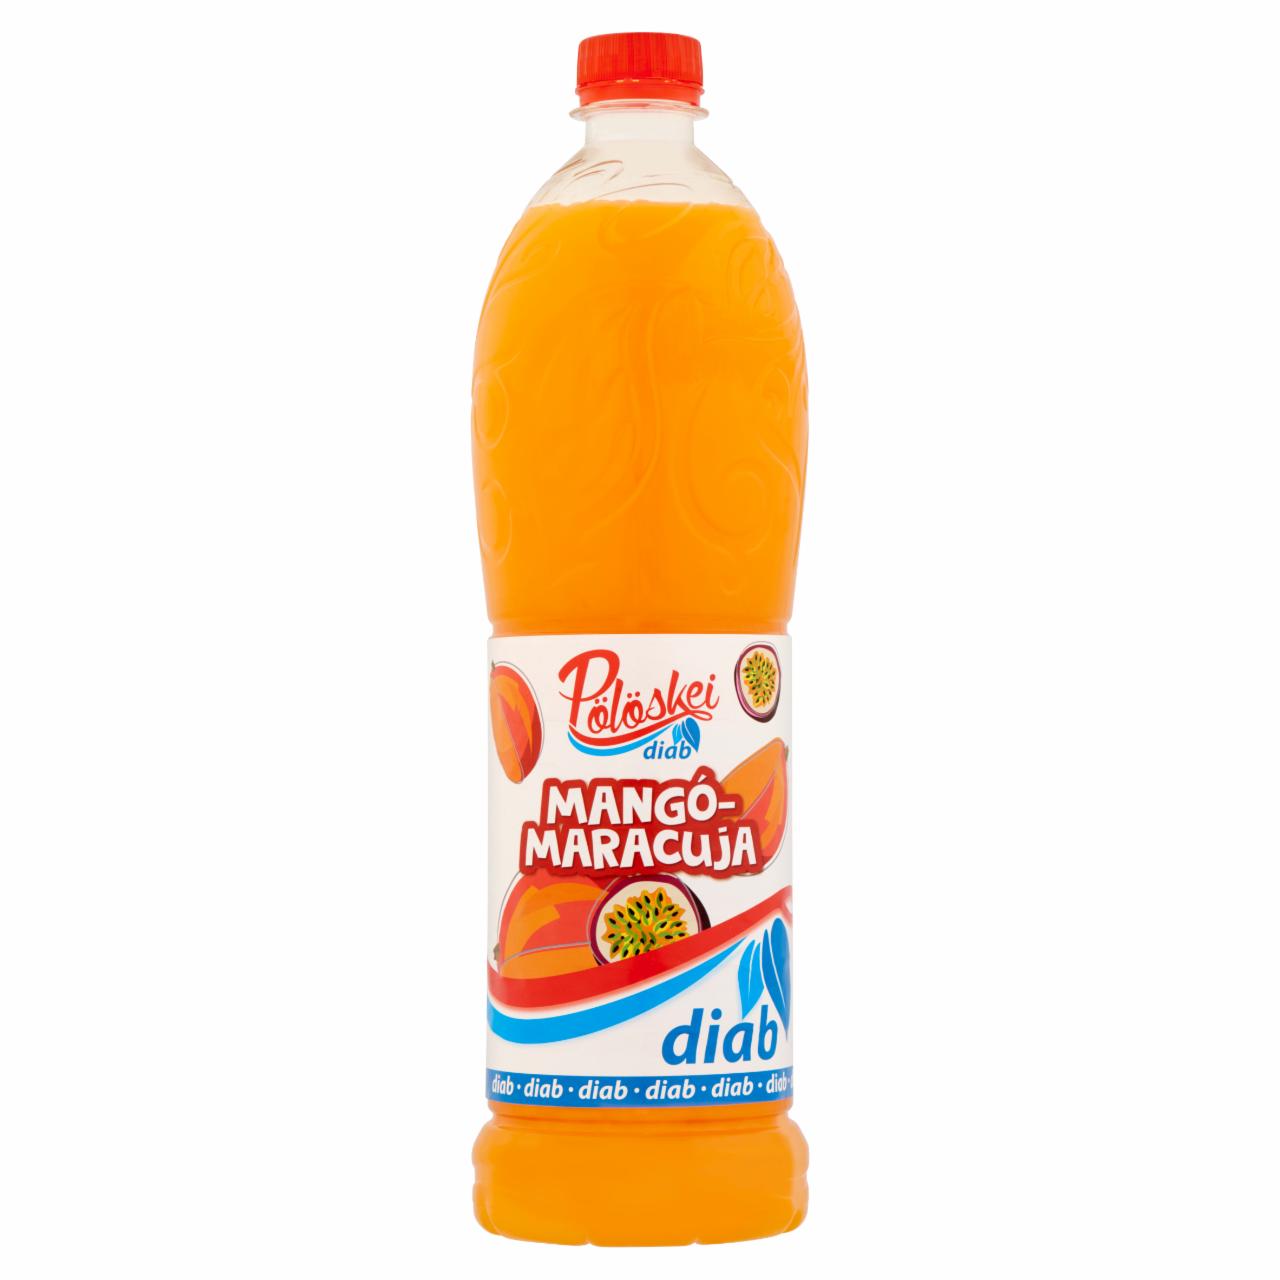 Képek - Pölöskei Diab mangó-maracuja ízű szörp édesítőszerekkel 1 l